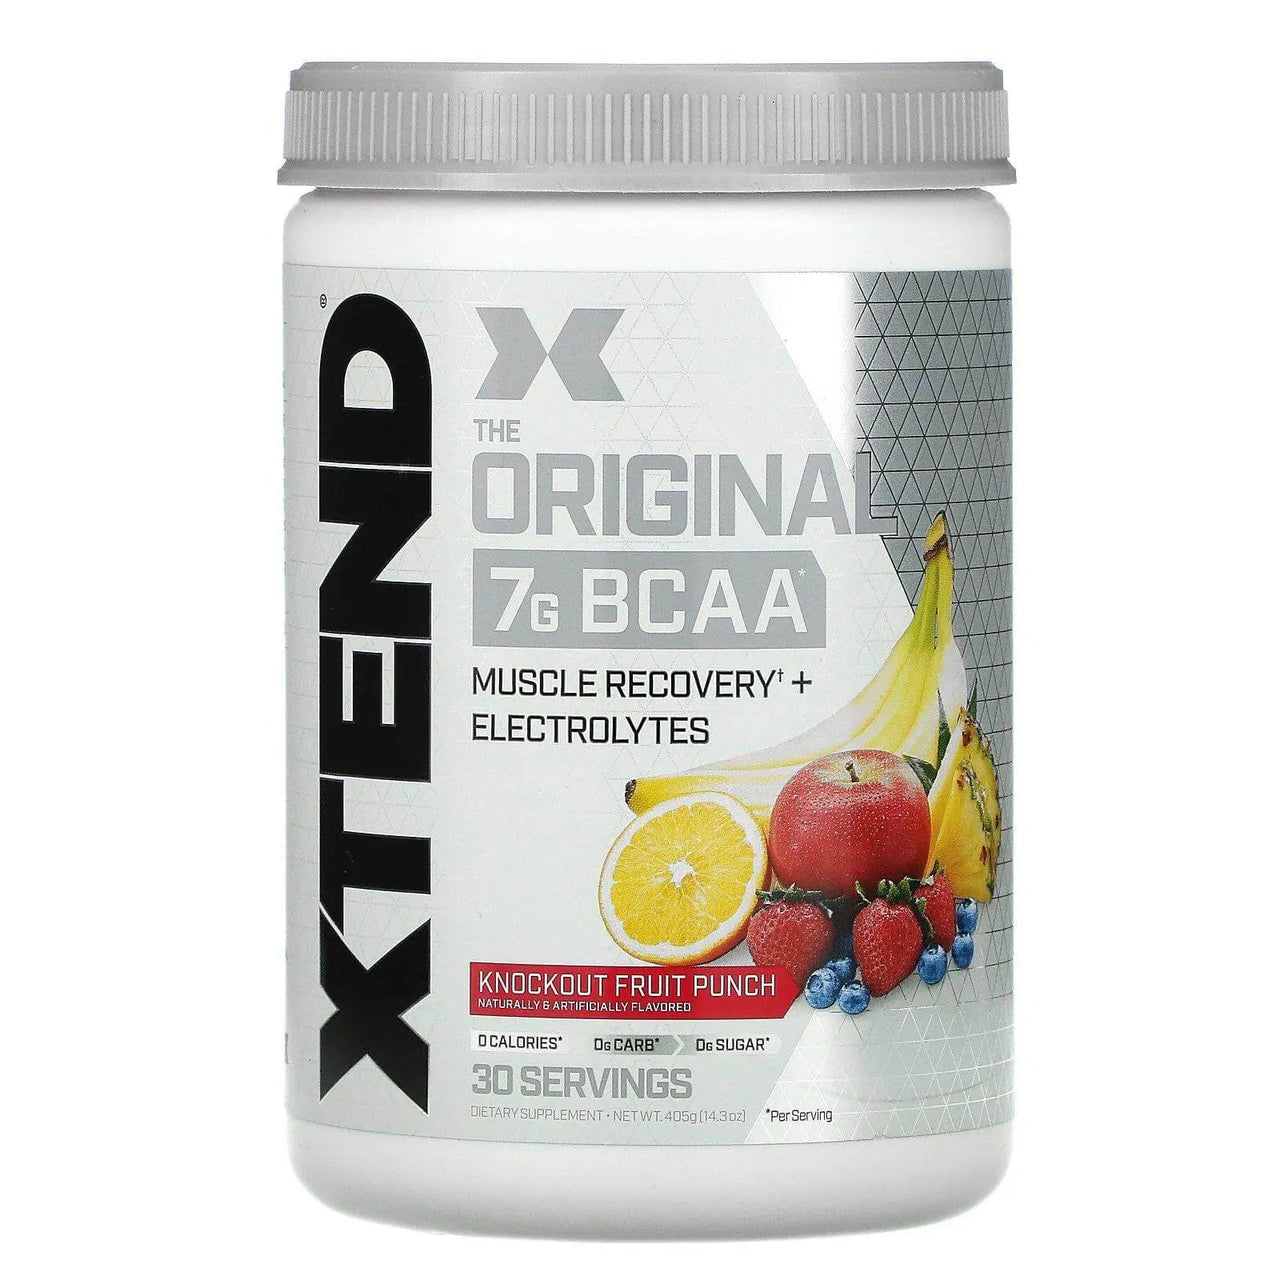 Xtend BCAA Original 30 Servings - Nutrition Plus